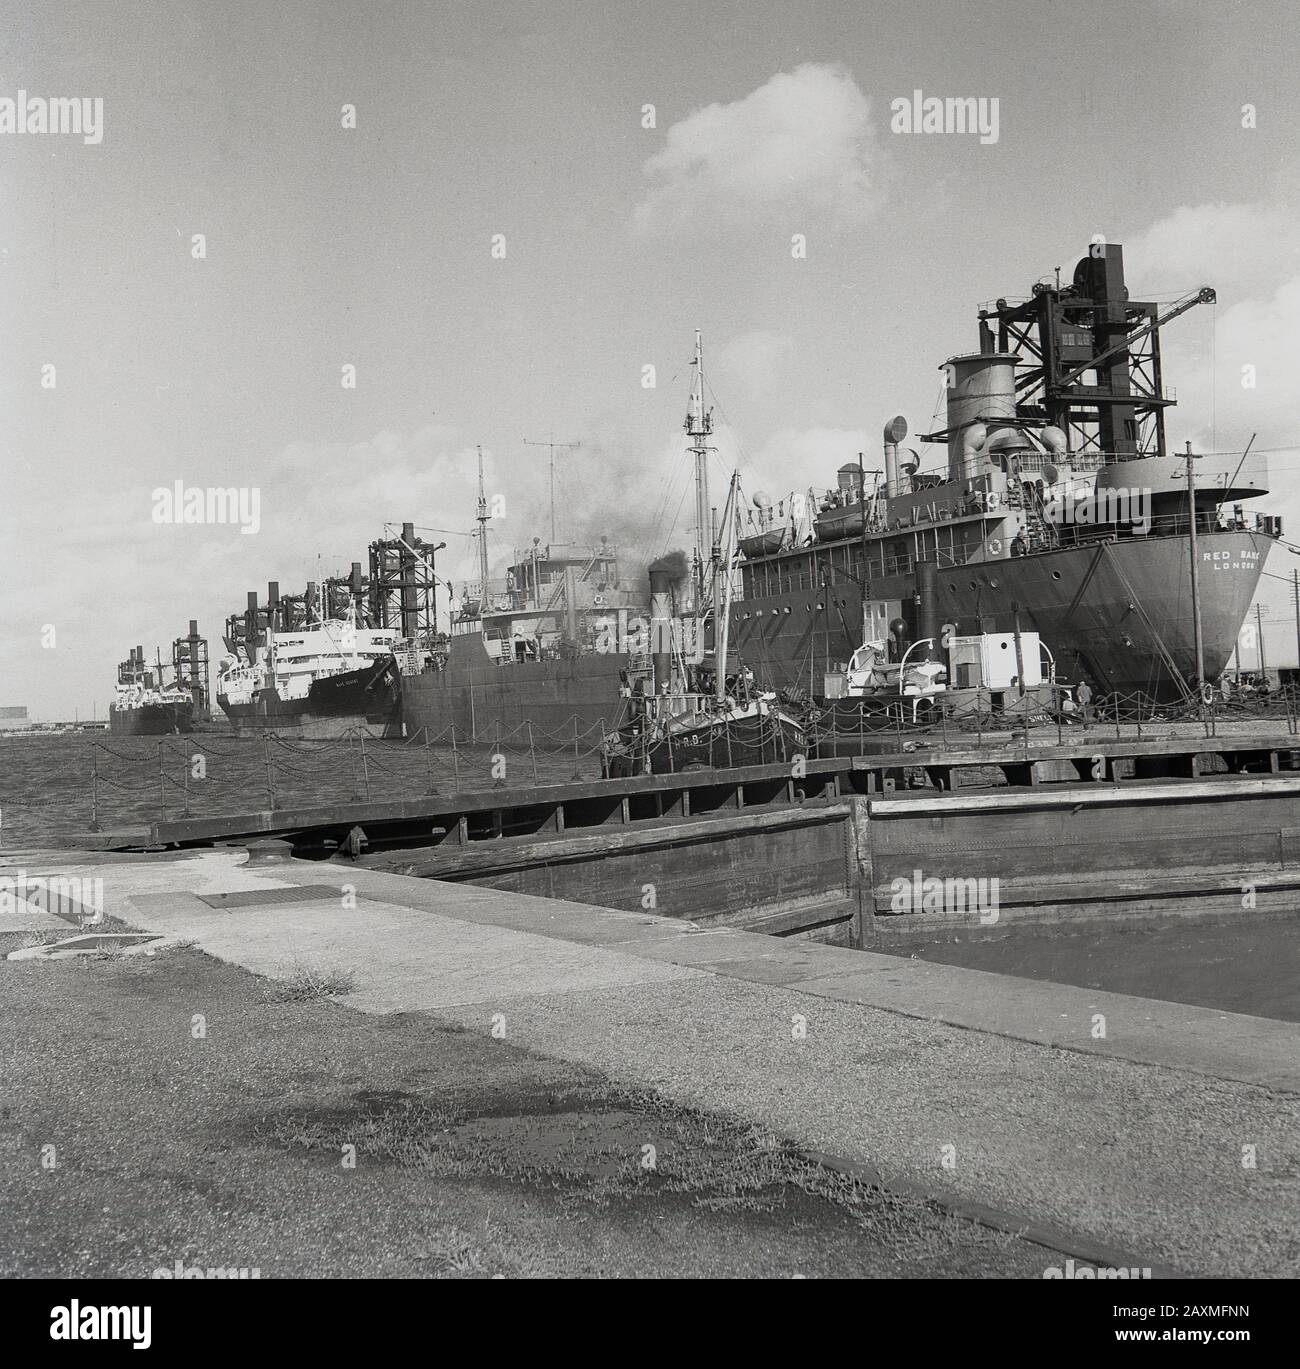 Années 1950, navires-vapeur historiques et de grande taille amarrés aux quais de Londres, Londres, Angleterre, Royaume-Uni. Banque D'Images